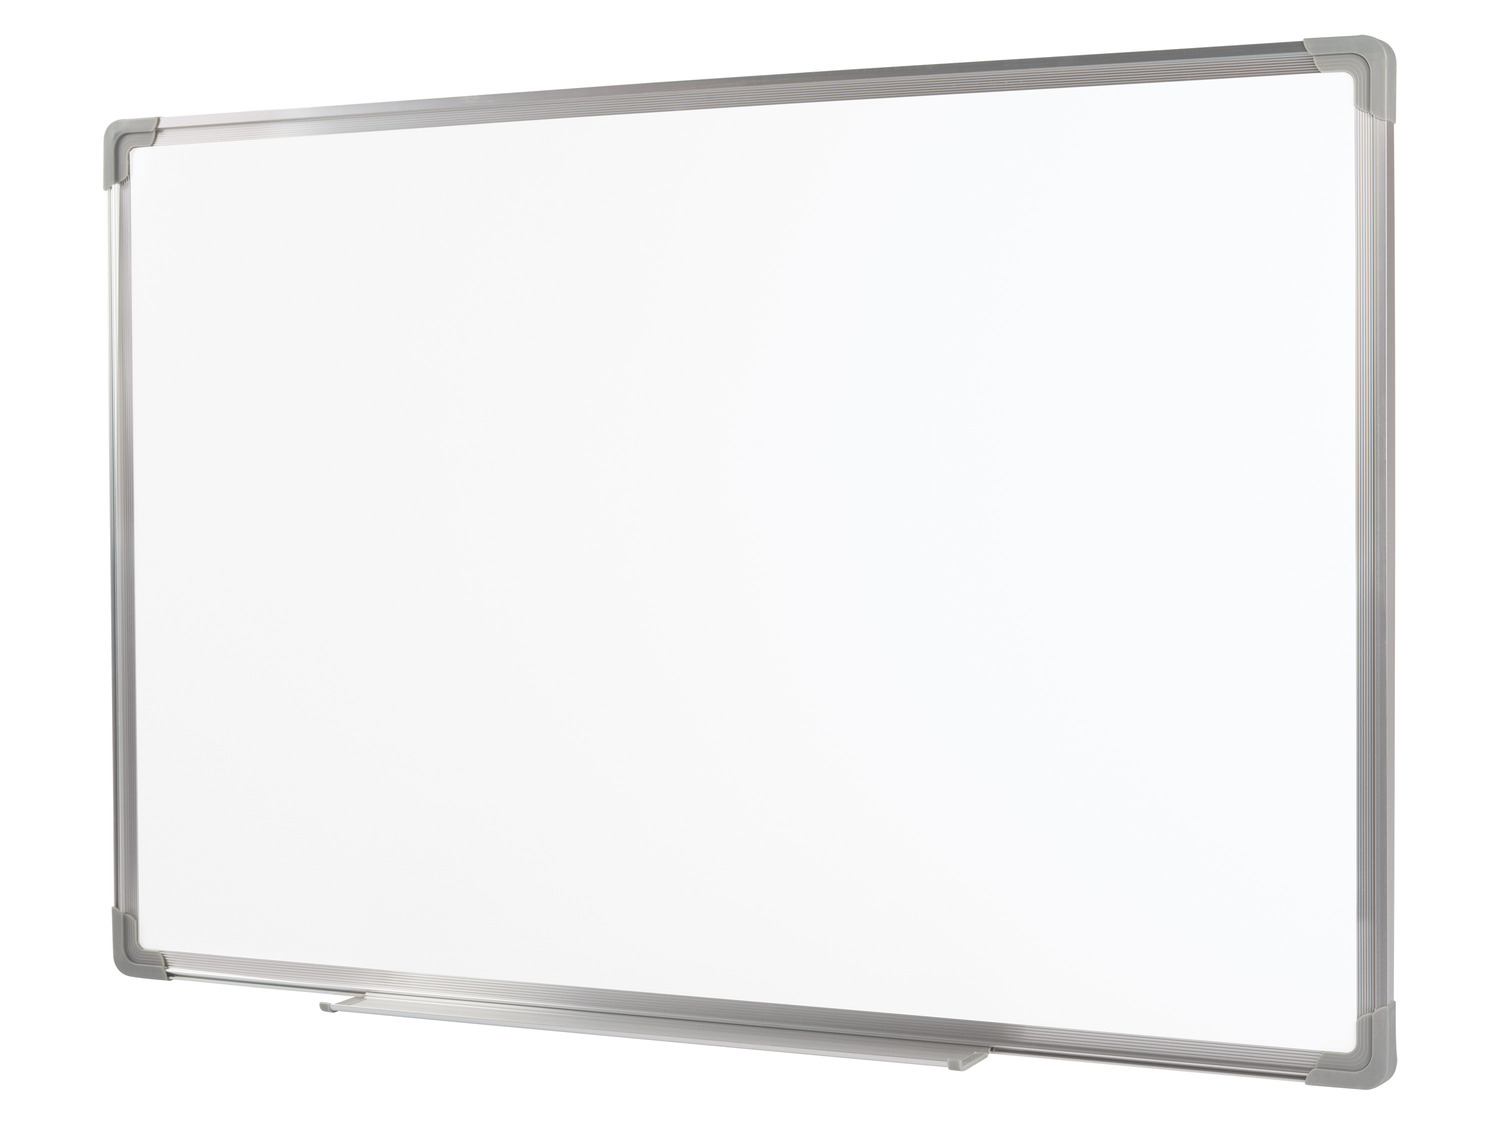 UNITED OFFICE® Magnet- und Whiteboard, abwischbar